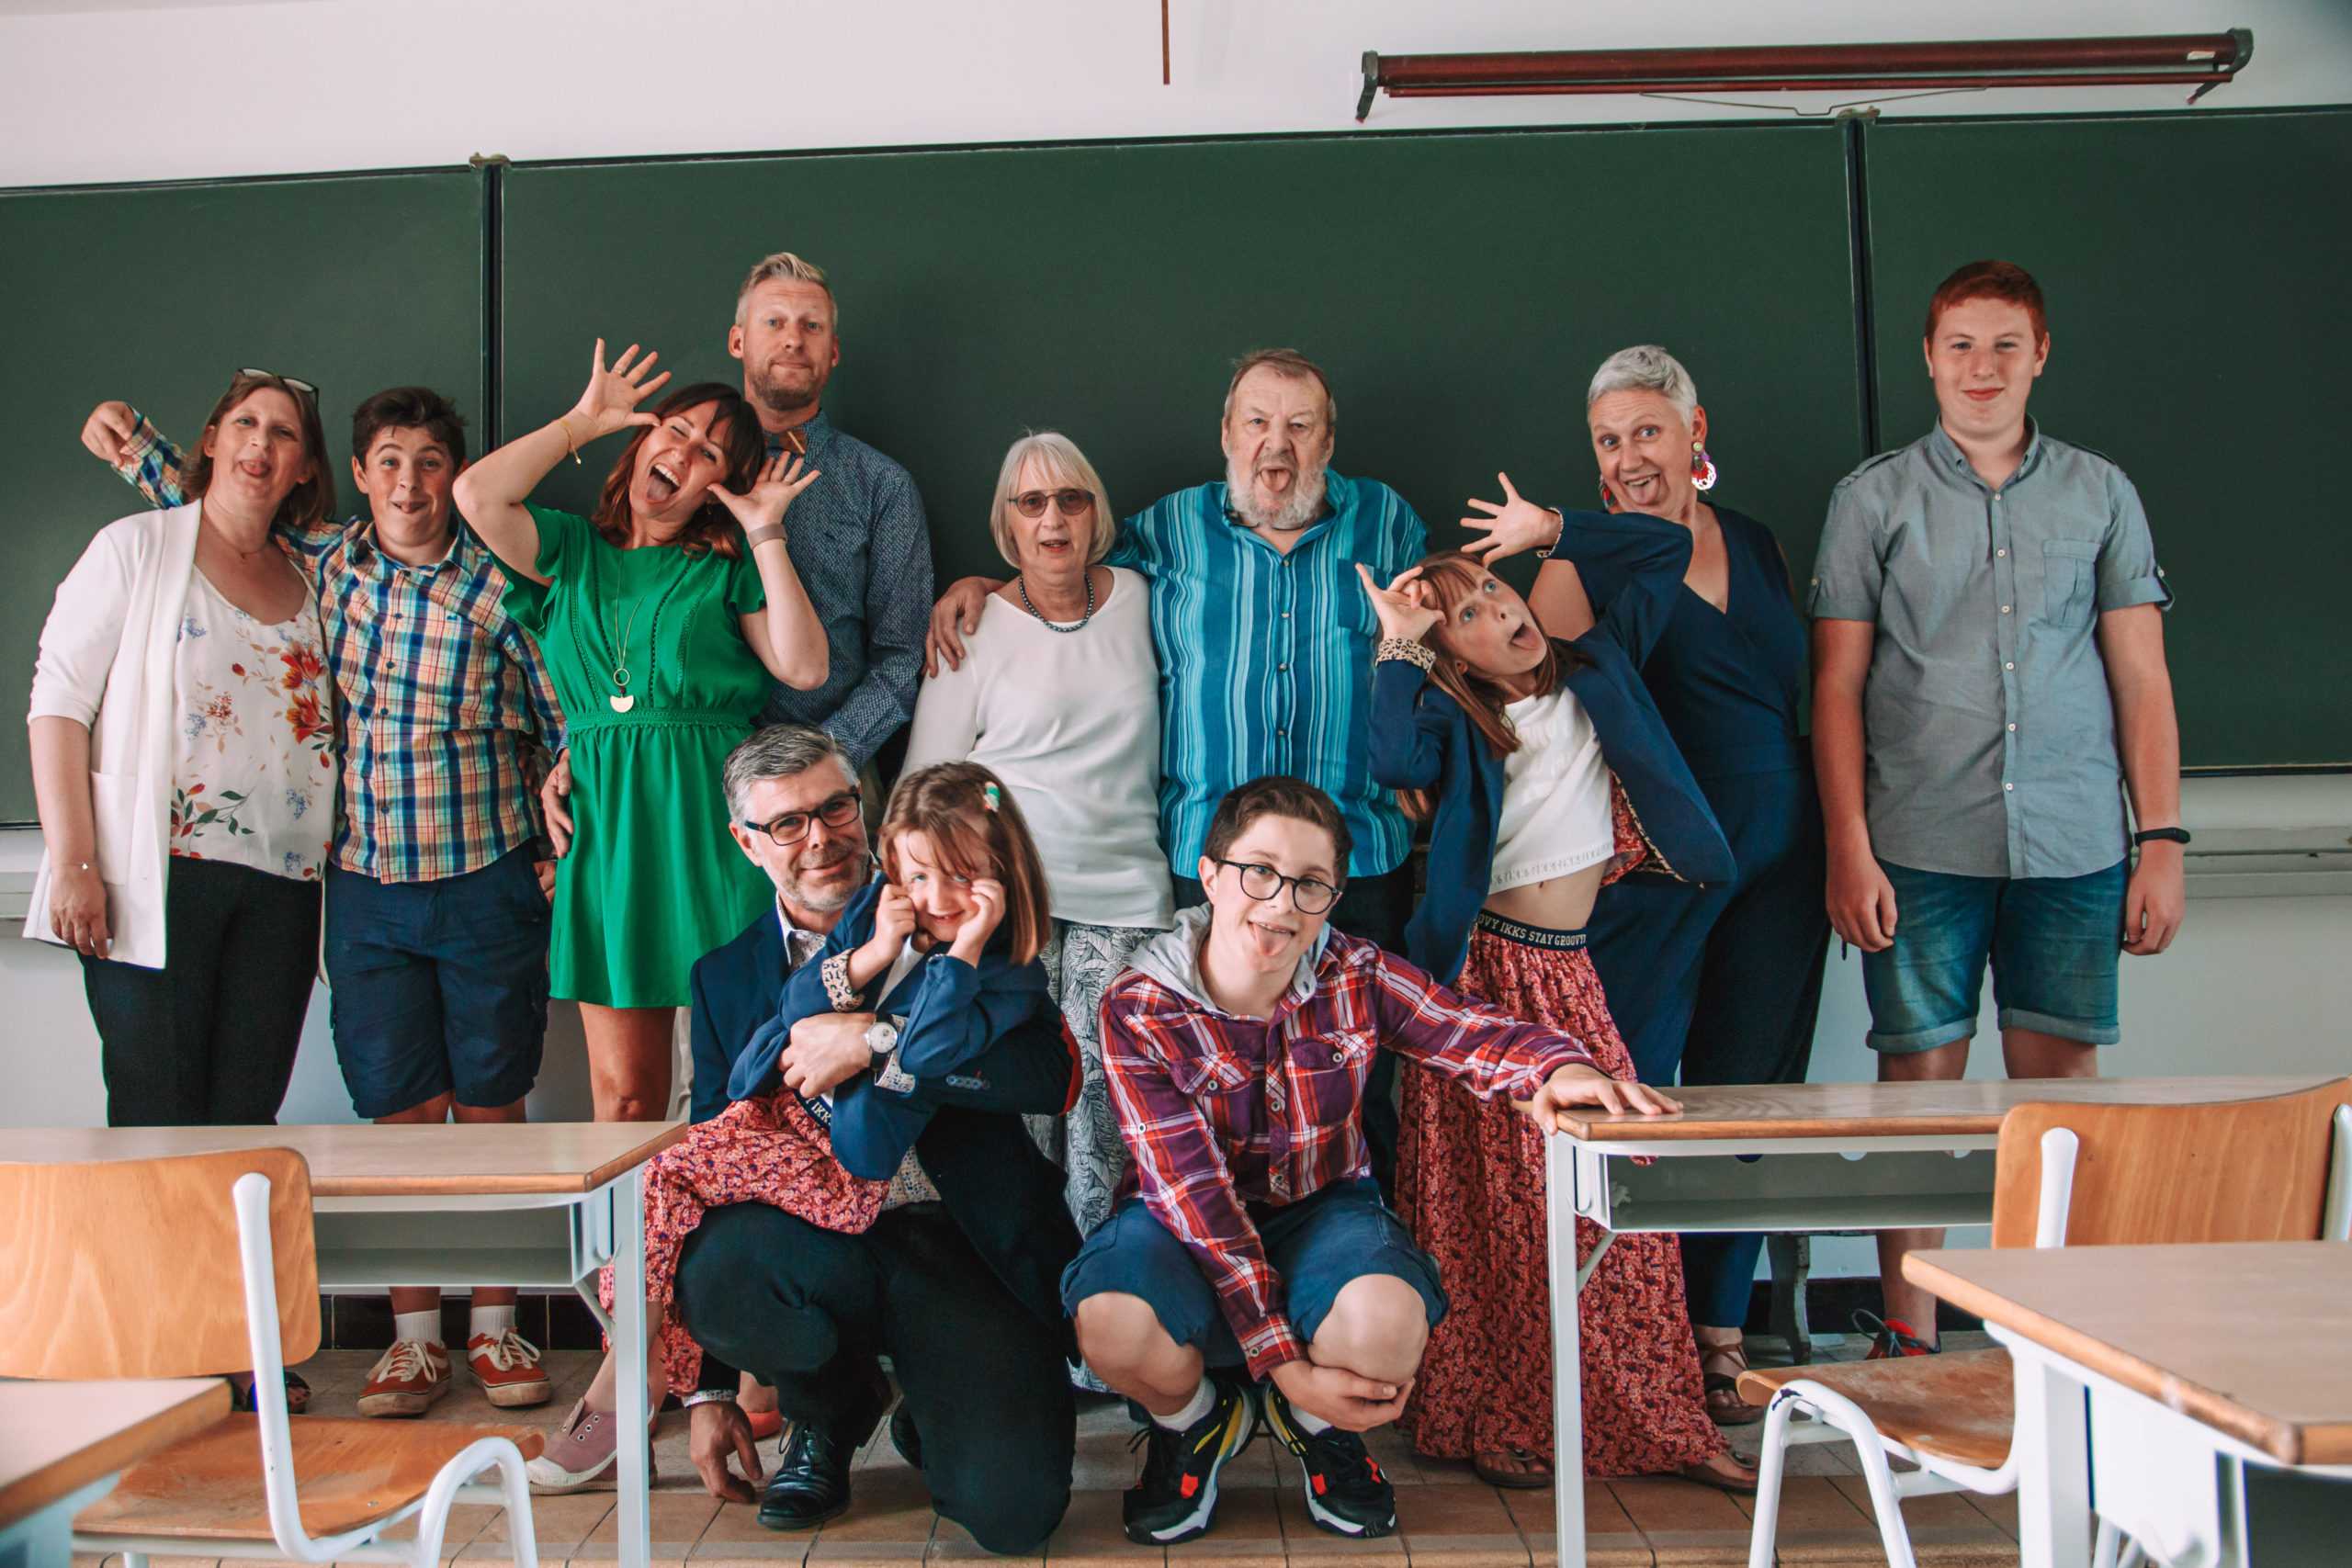 Photo groupe famille drole grimace anniversaire dans une école parents enfants belgique brabant wallon